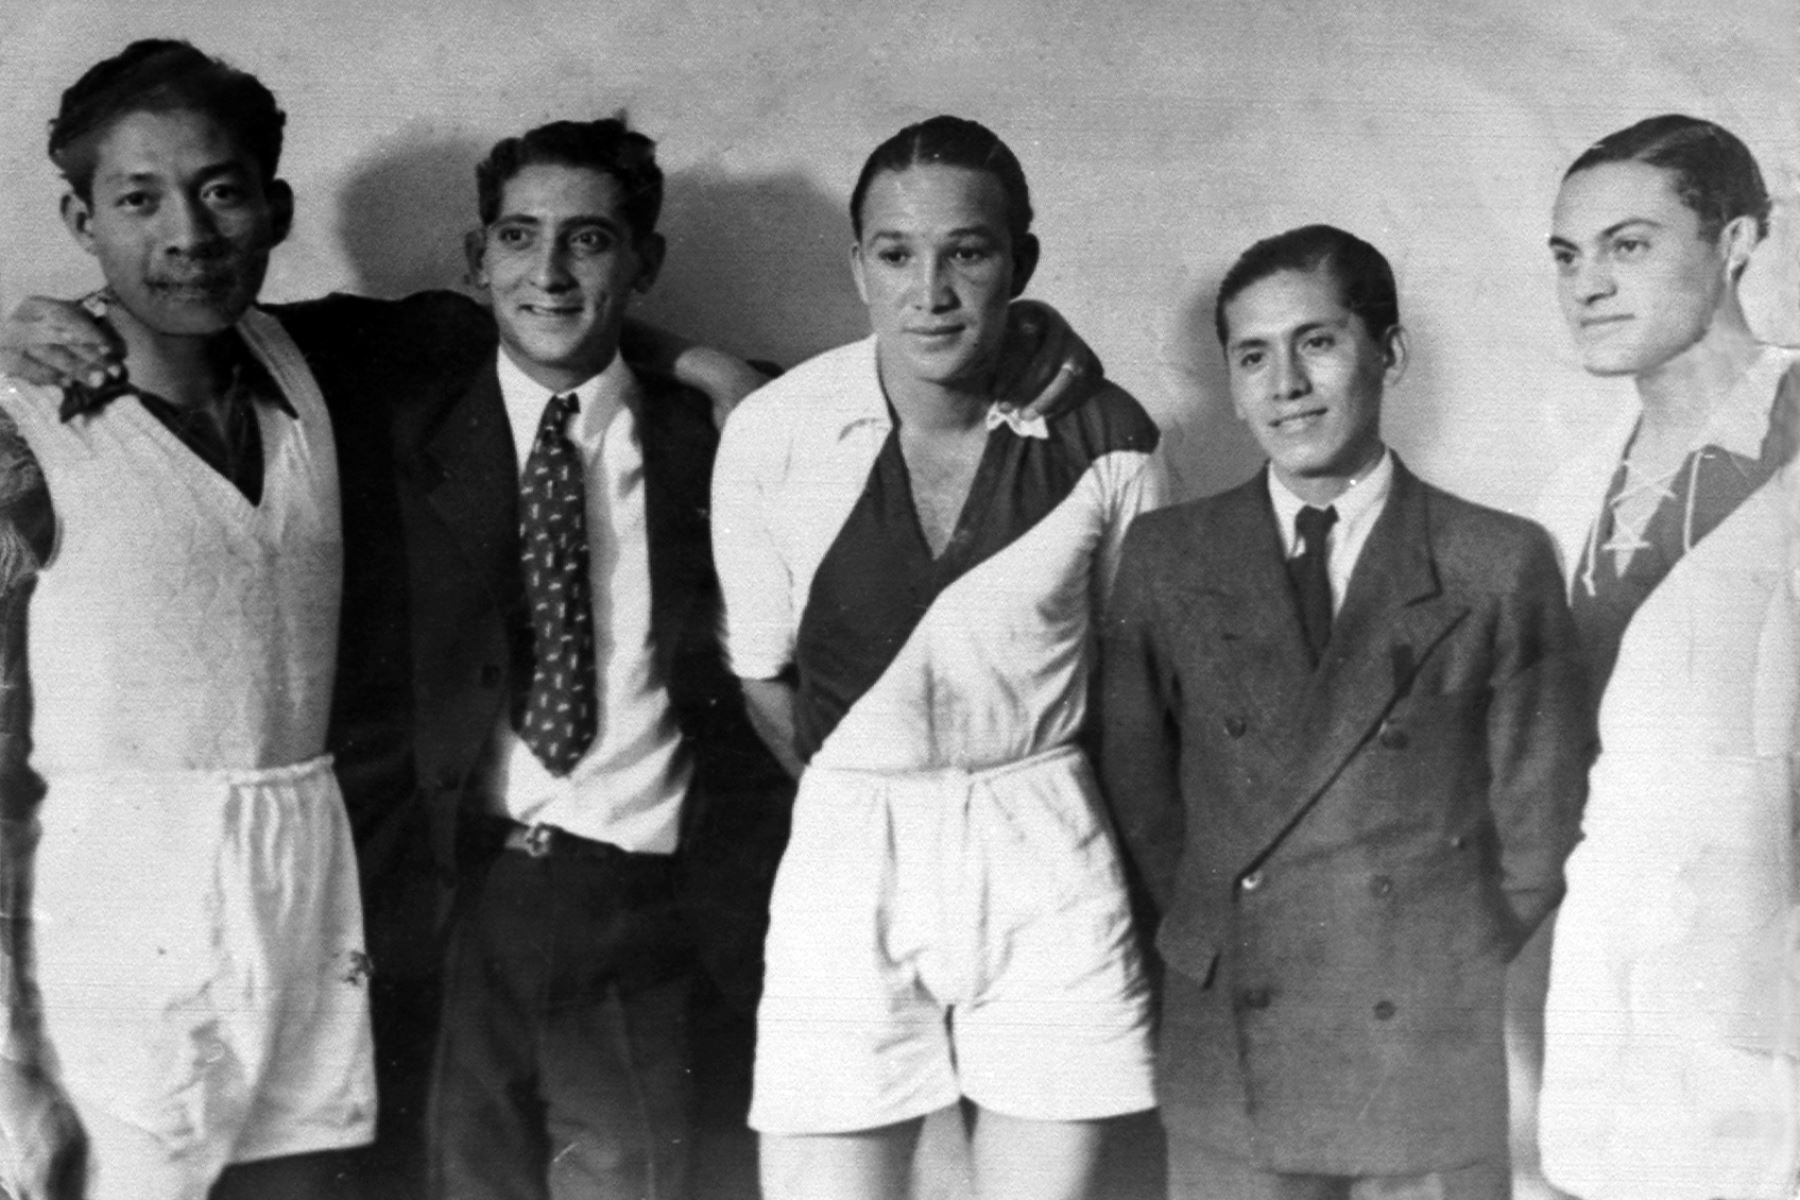 Lima - 1939 / Juan Honores, Arturo Fernández y Carlos Tovar, integrantes de la selección peruana  que logró por primera vez el título de campeón sudamericano de fútbol.